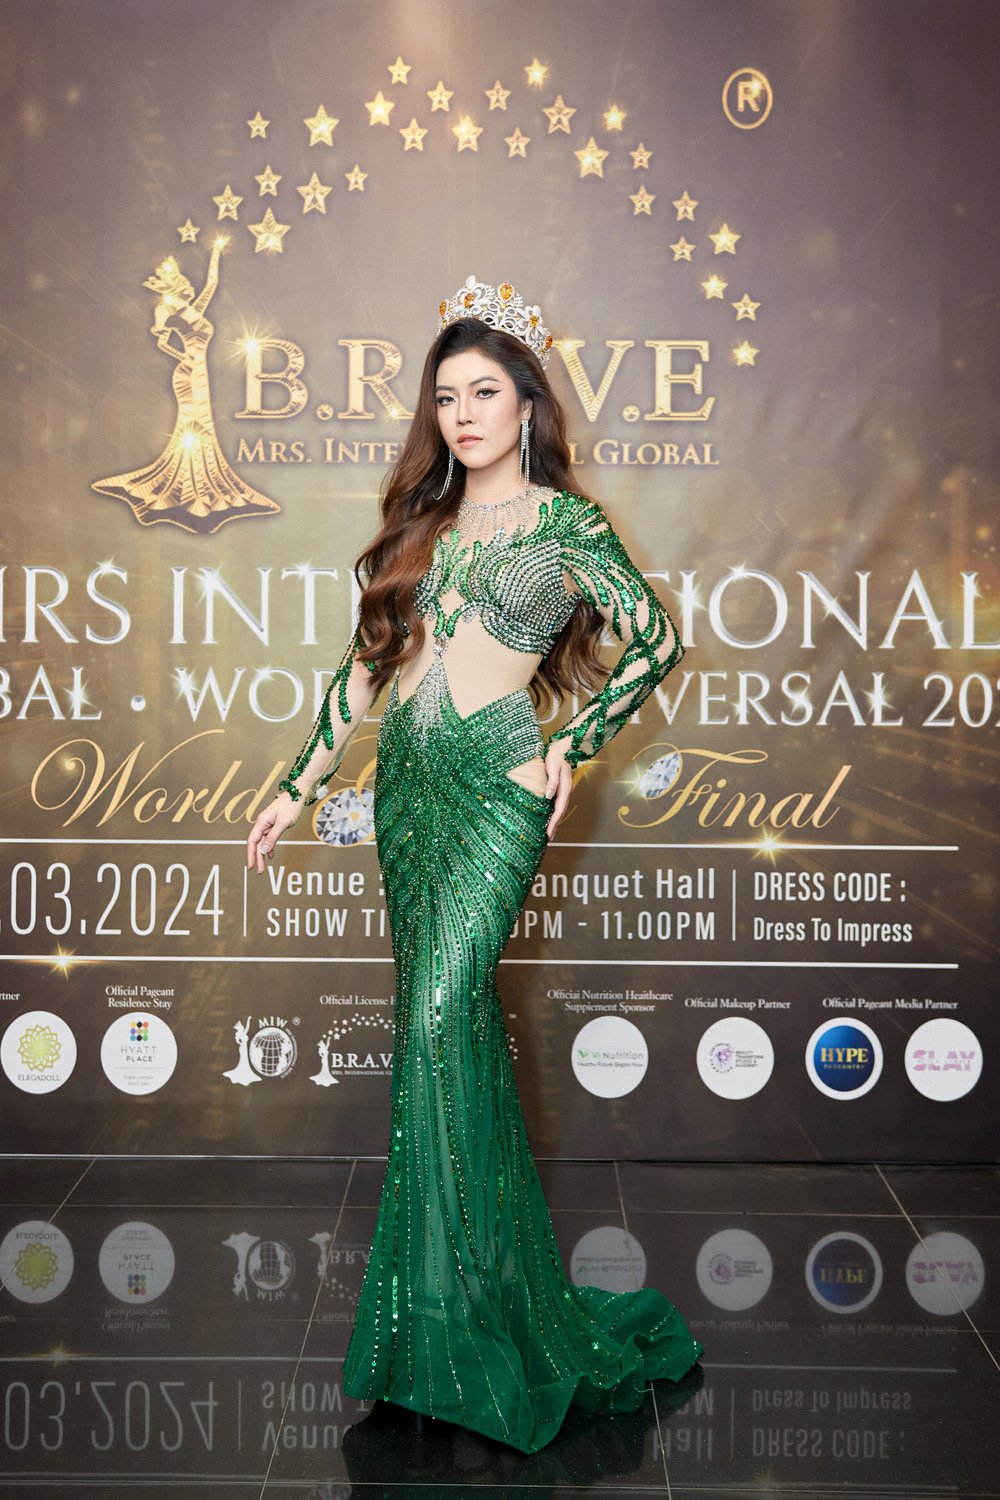 Hoa hậu Trần Hà Trâm Anh chấm thi cuộc thi quốc tế, bật khóc khi trao vương miện - Ảnh 1.